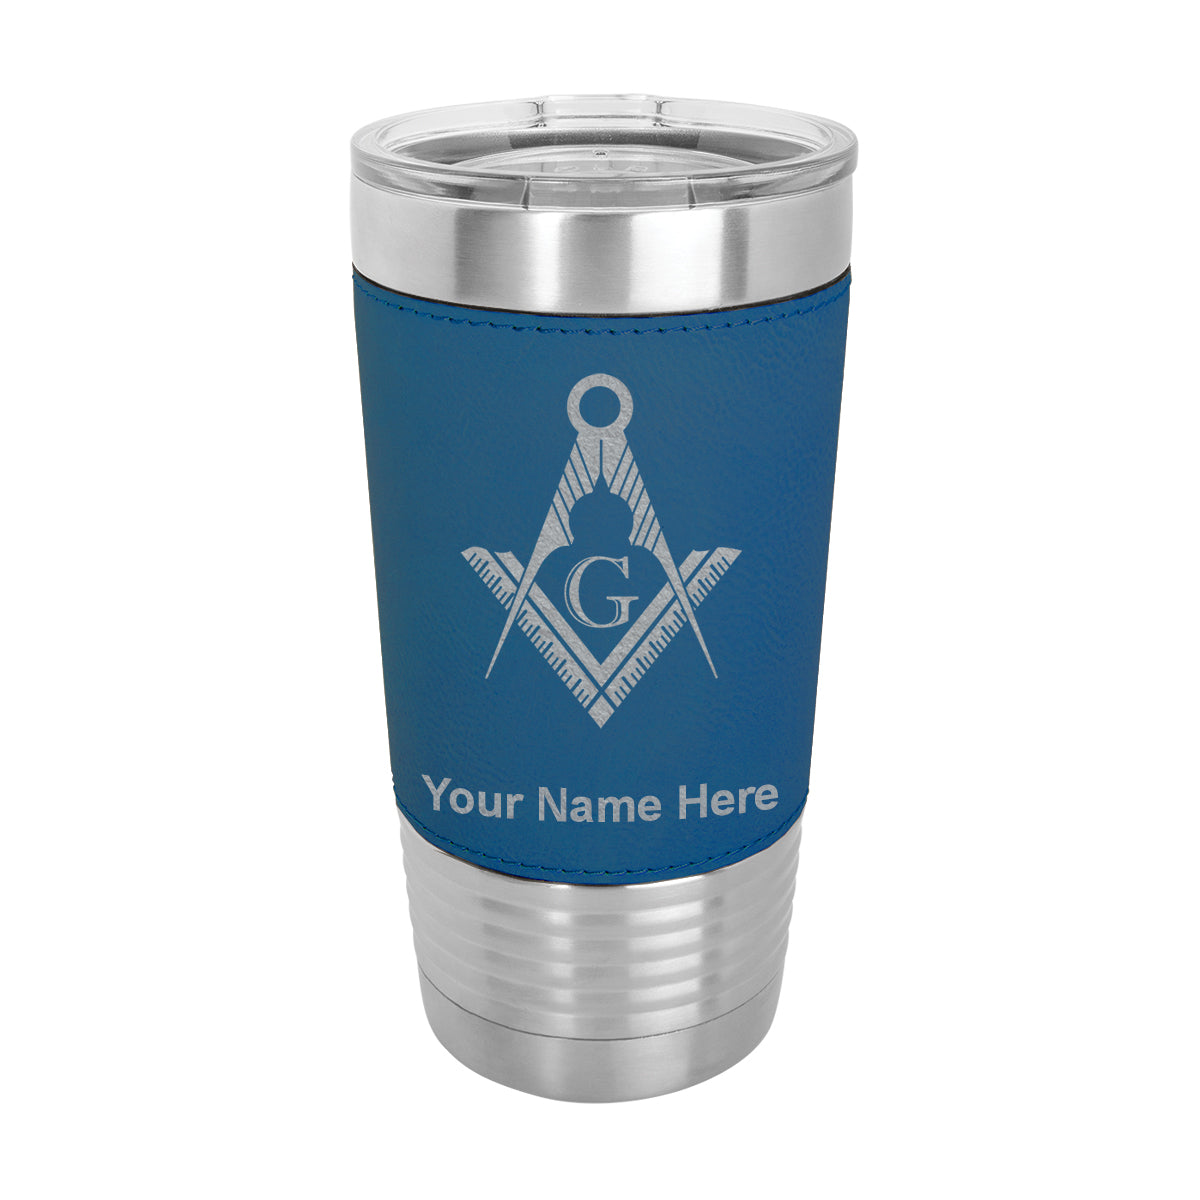 20oz Faux Leather Tumbler Mug, Freemason Symbol, Personalized Engraving Included - LaserGram Custom Engraved Gifts